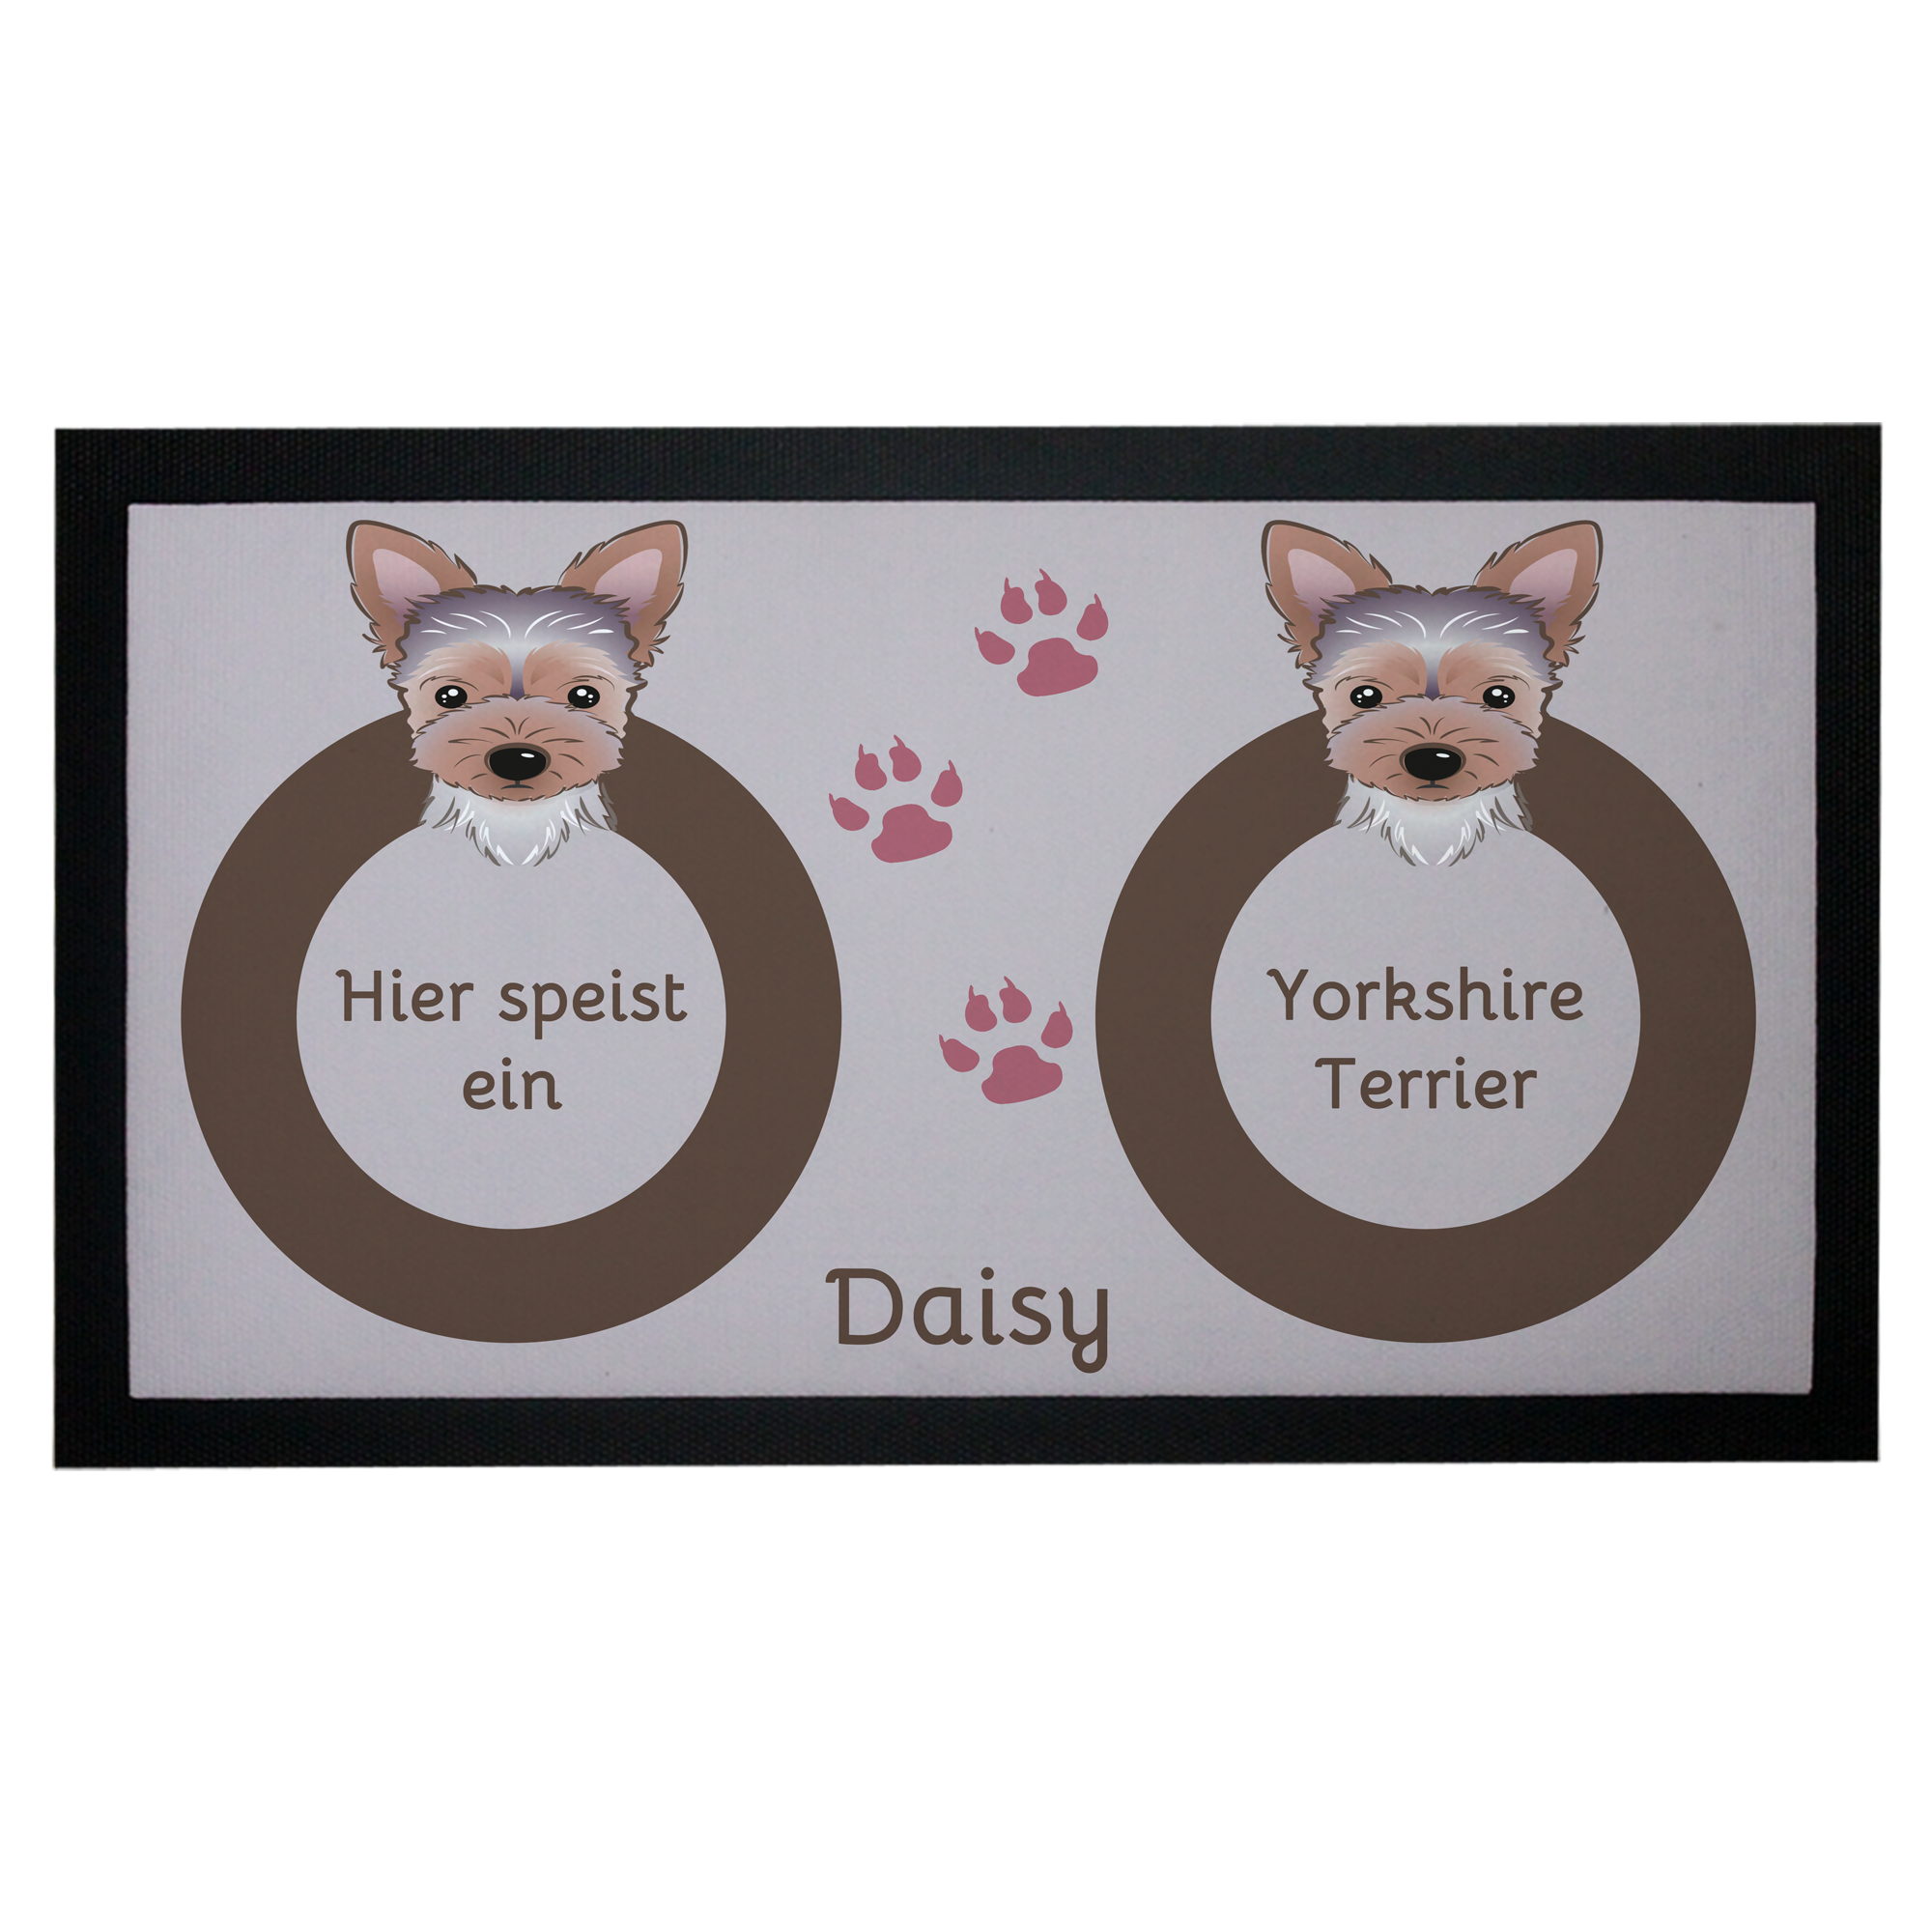 Napfunterlage Hund Yorkshire Terrier mit Name